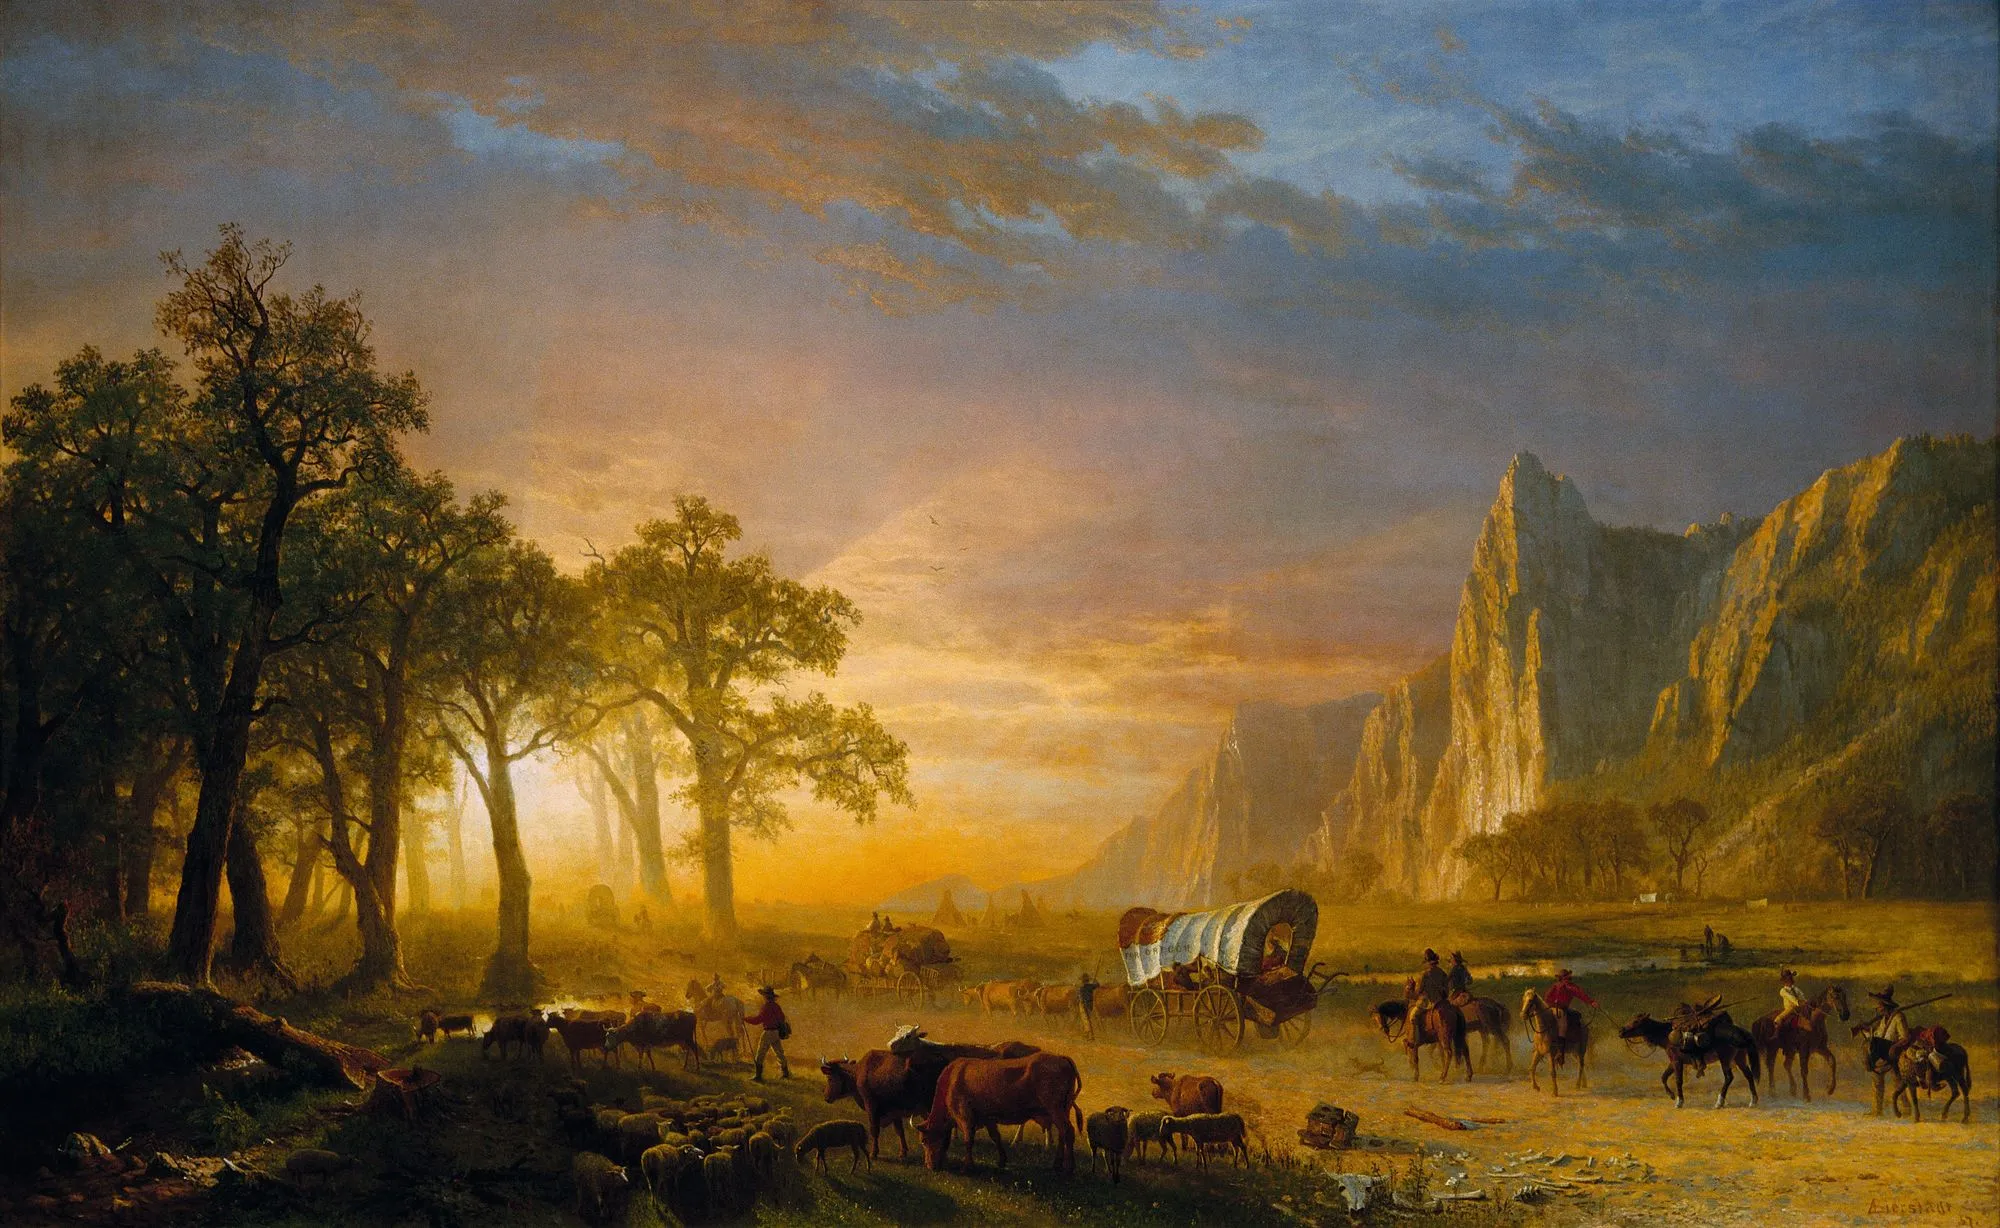 Emigrants Crossing the Plains, Albert Bierstadt, 1869.